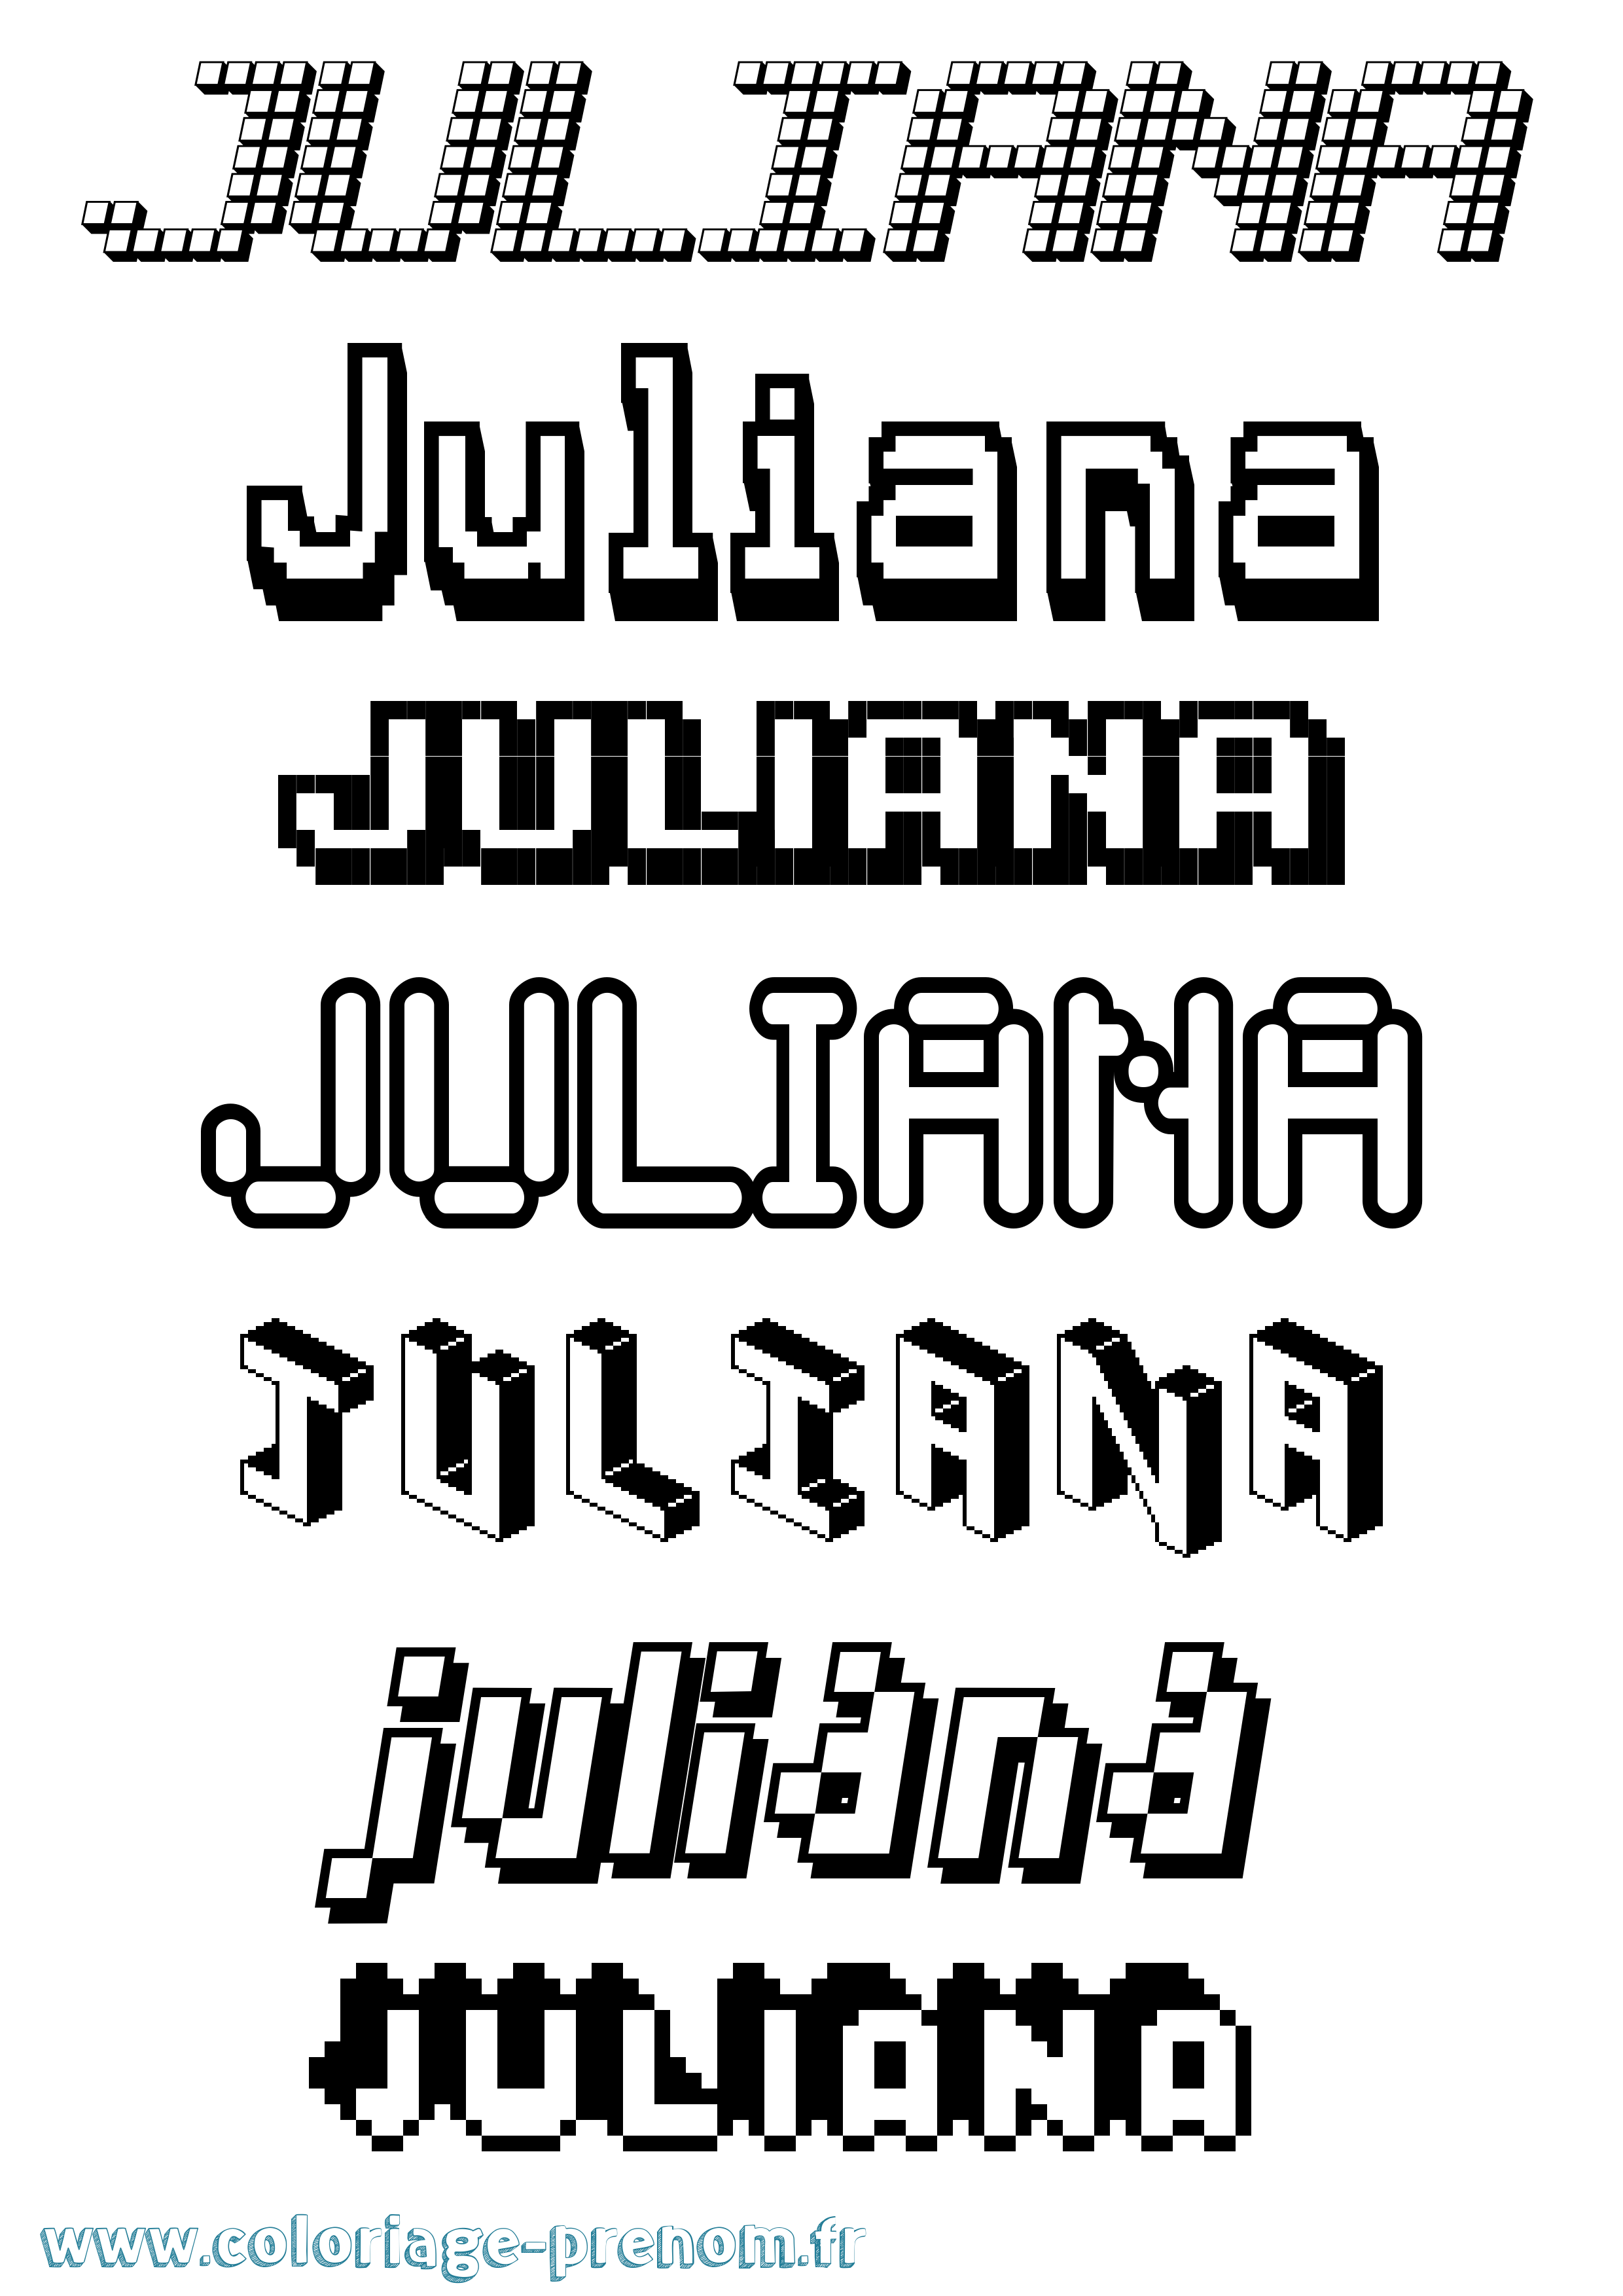 Coloriage prénom Juliana